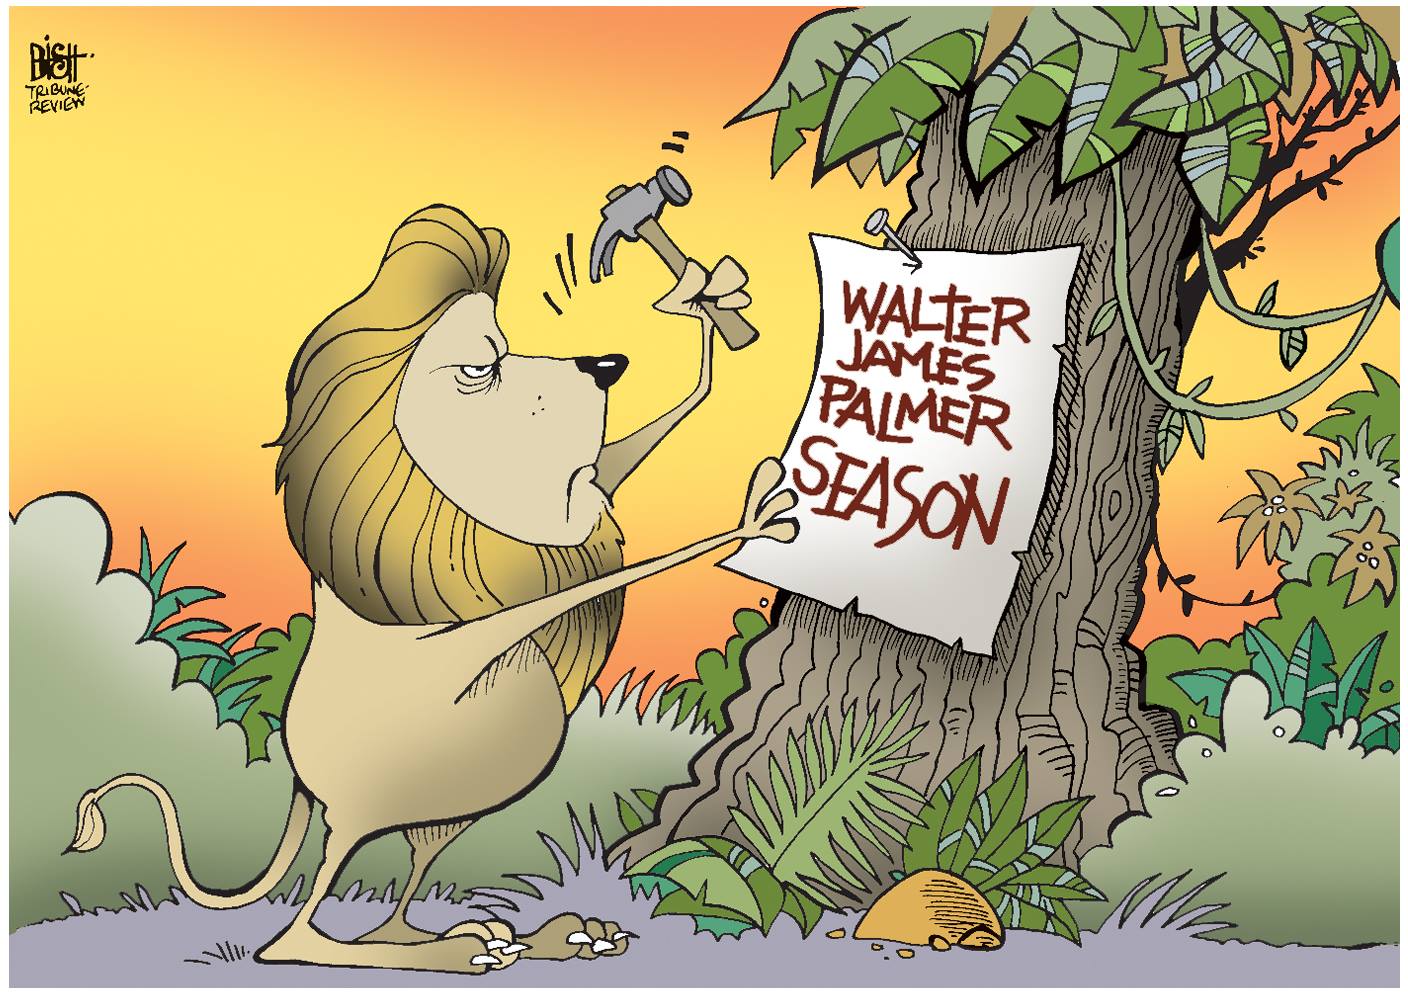 walter james palmer season, lion nailing a sign to a tree